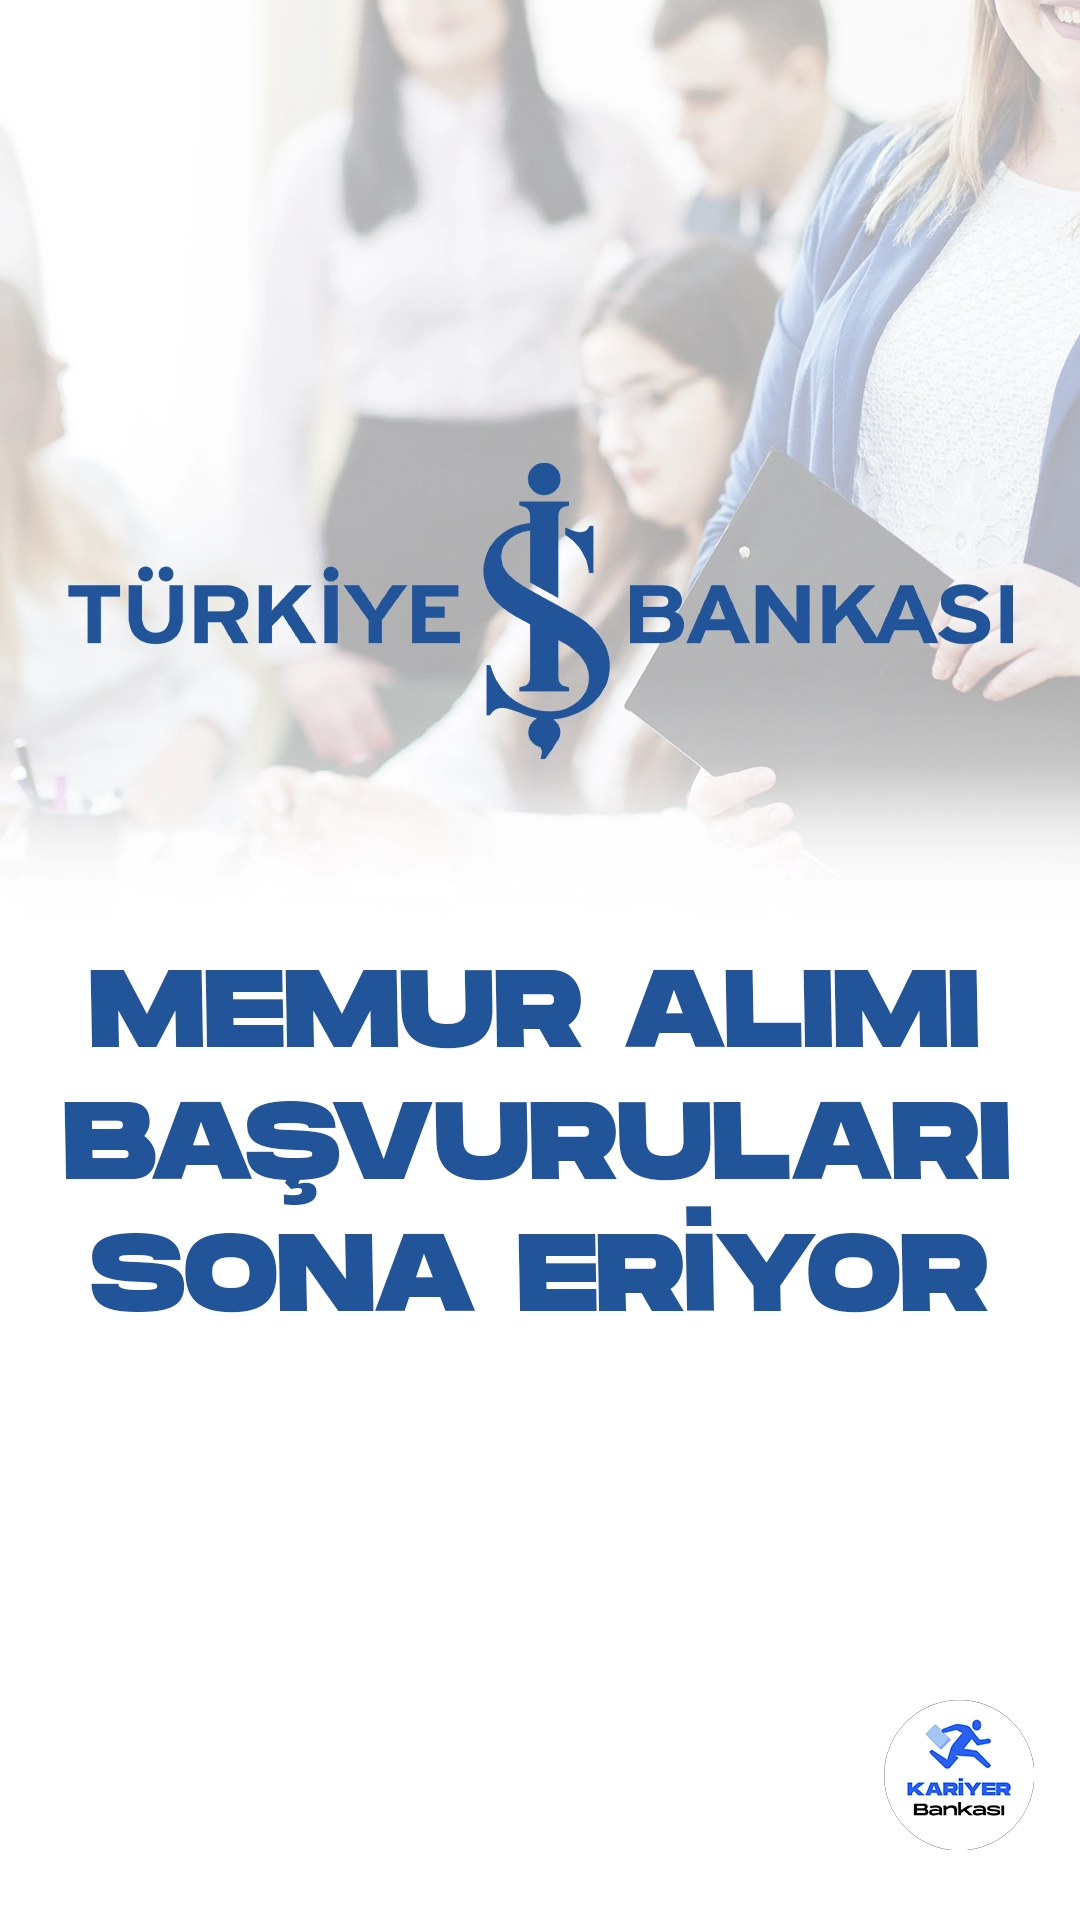 İş Bankası Memur Alımı Başvuruları Sona Eriyor!Türkiye İş Bankası Kariyer sayfası üzerinden yayımlanan duyuruda, İş Bankası'nın farklı şubelerinden temel bankacılık hizmetlerini yerine getirmek üzere memur pozisyonunda görevlendirilecek personel alımı yapılacağı aktarıldı.Başvurular 1 Aralık 2023 tarihinde sona erecek.Başvuru yapacak adayların belirtilen başvuru şartlarını taşıması gerekmektedir.